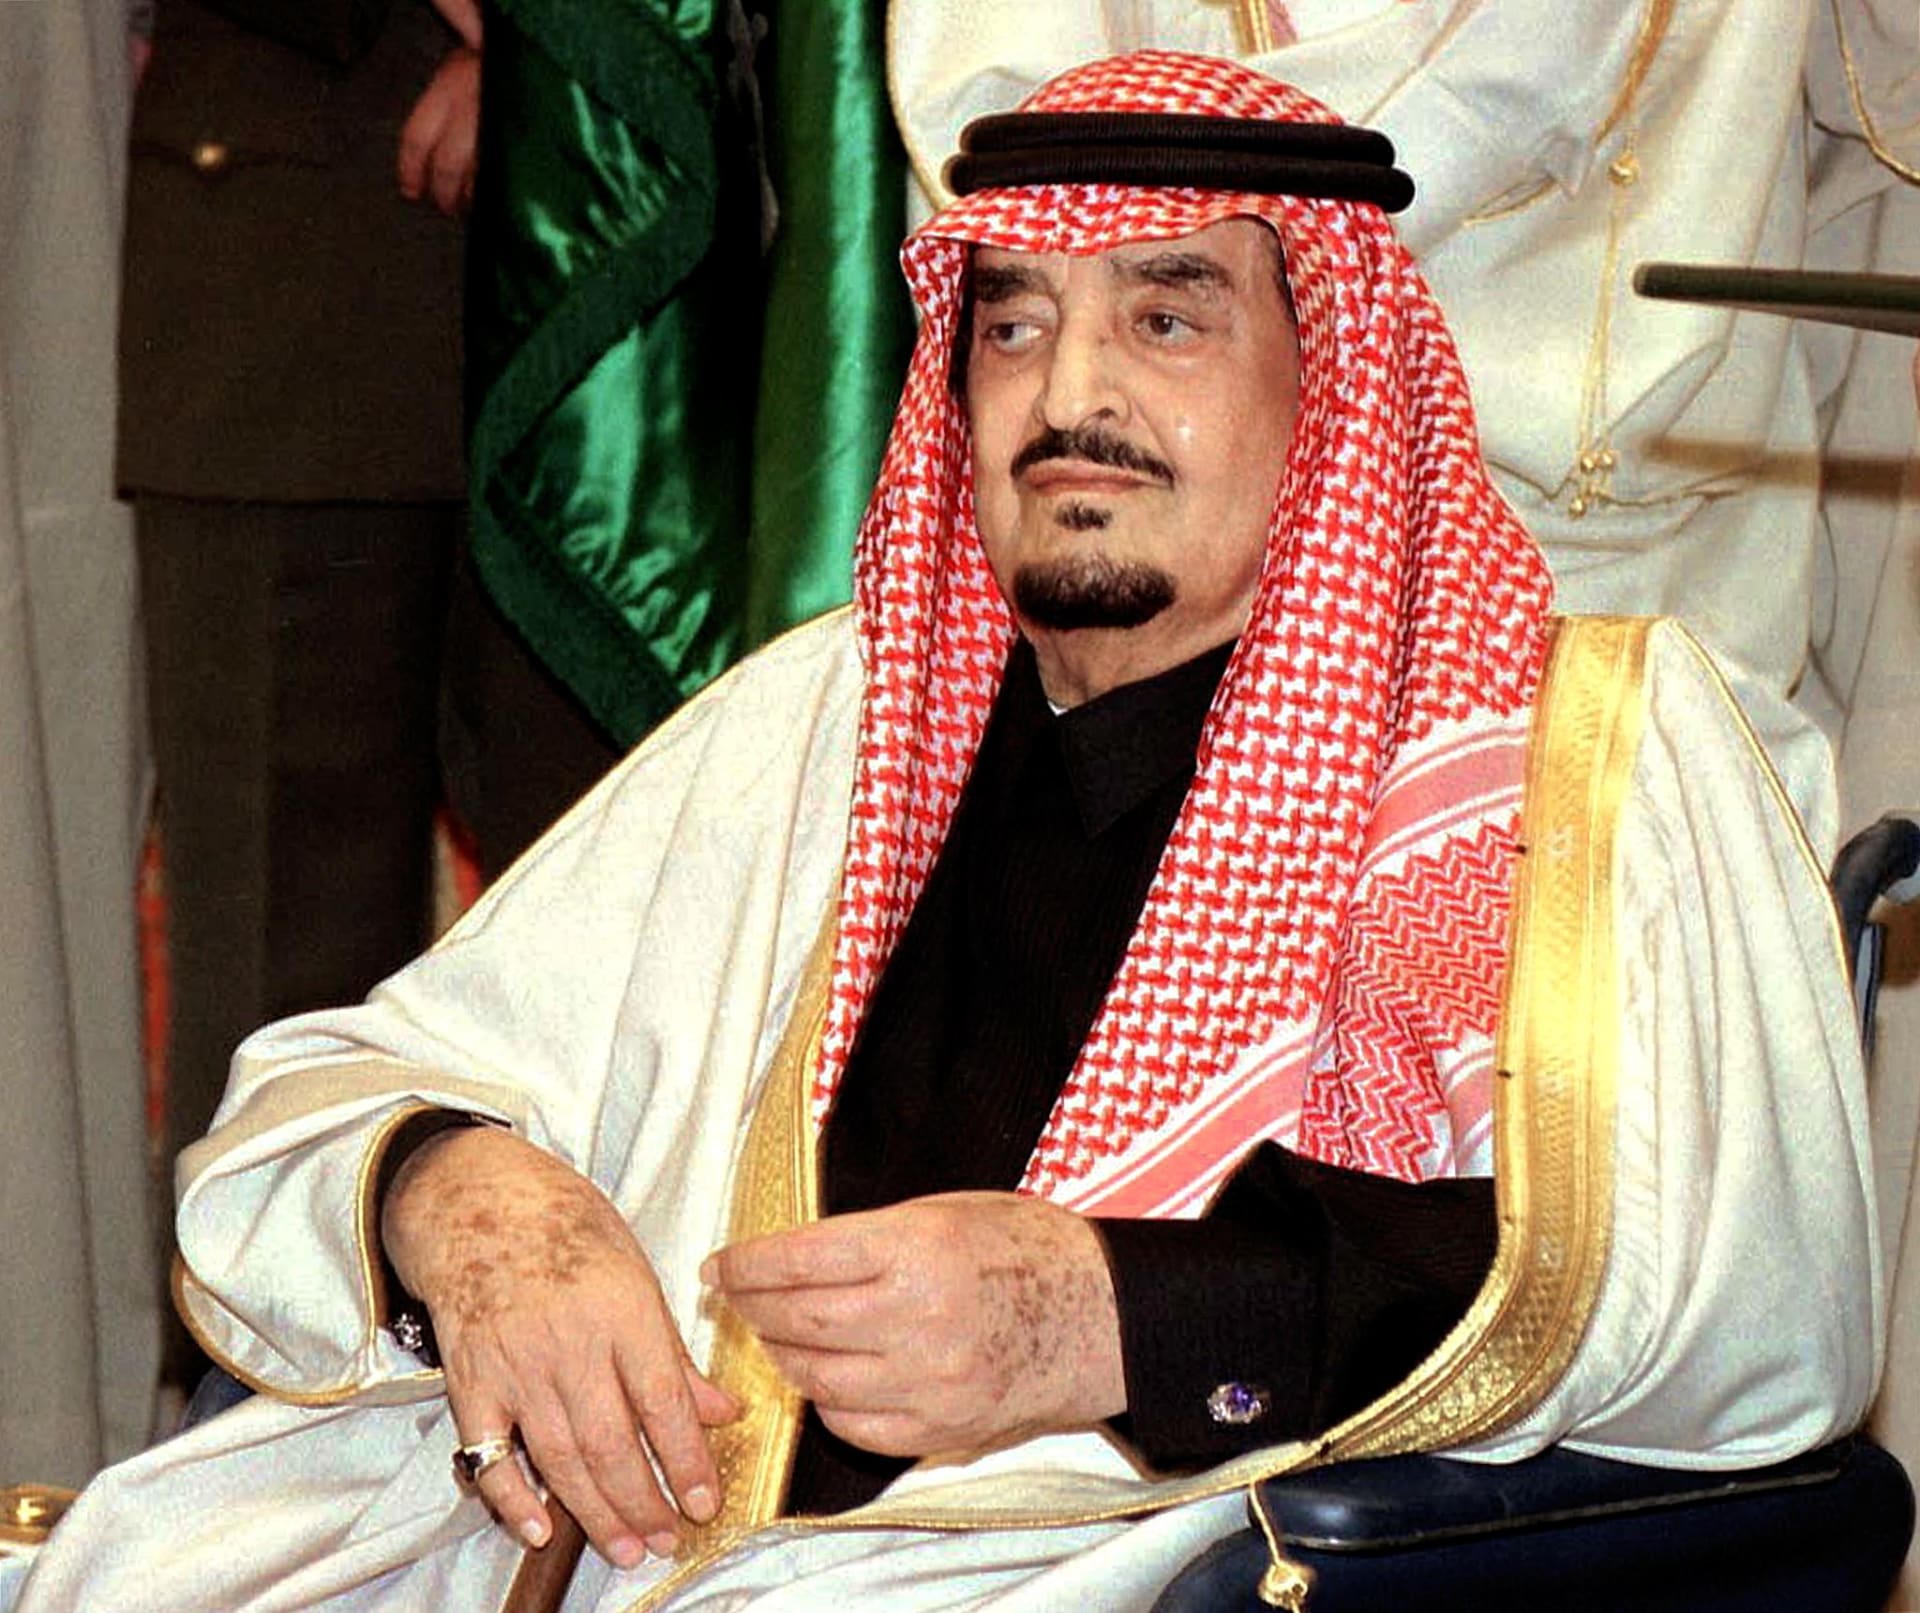 السعودية.. تداول فيديو حديث الملك فهد على "كرامة الكويت" وتعليق الملك سلمان